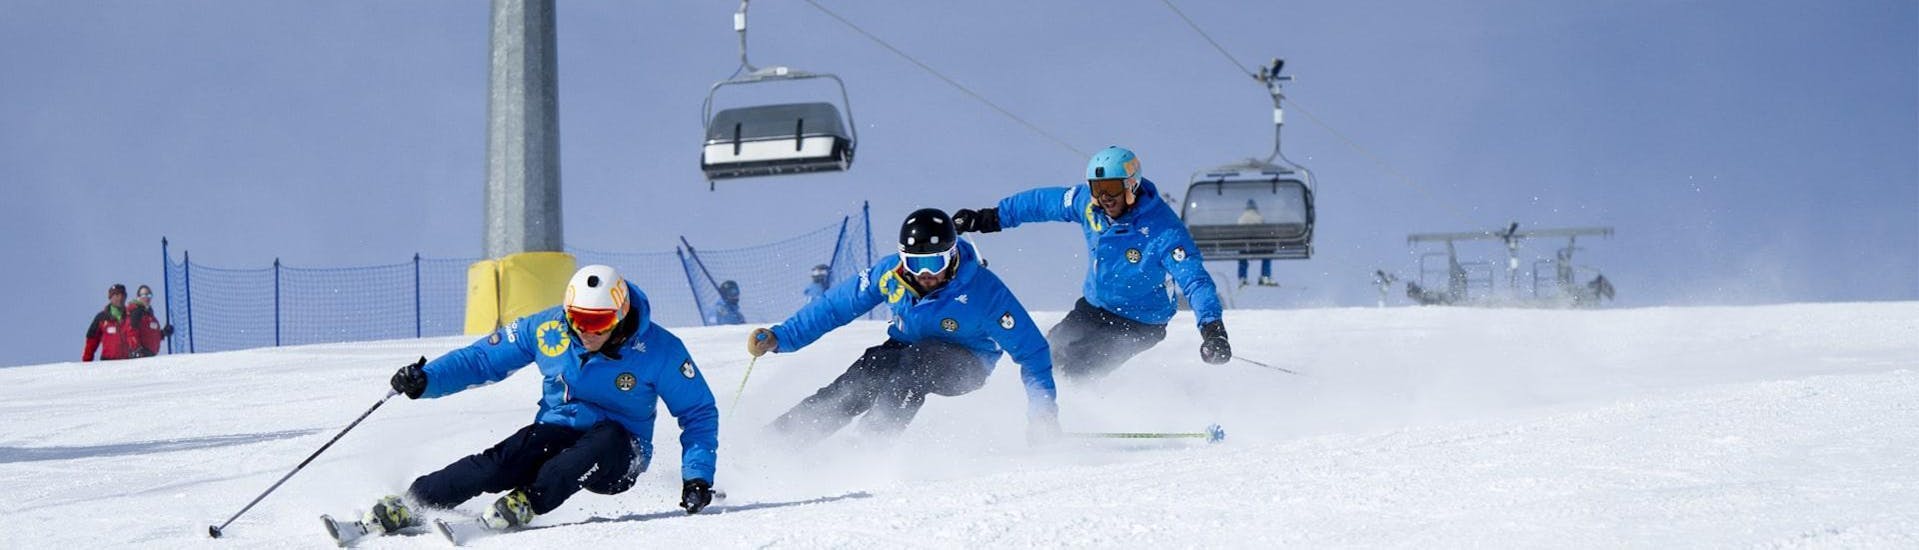 Tre sciatori scendono la pista grazie alle tecniche apprese durante le Lezioni private di sci per adulti - Tutti i livelli della Scuola di Sci Azzurra Livigno.